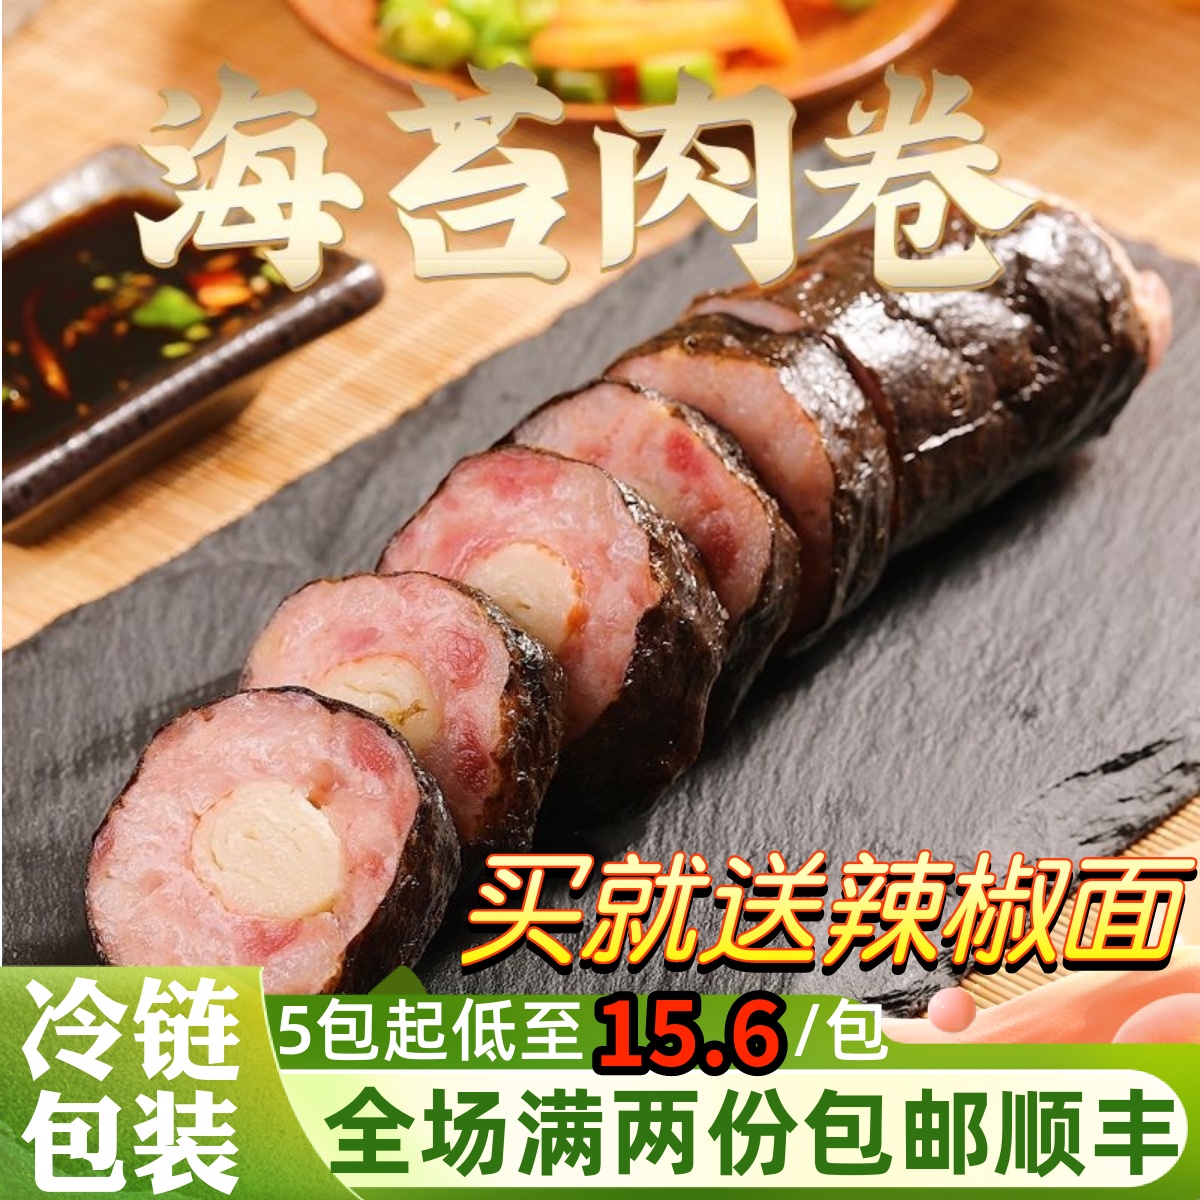 海苔肉卷蟹柳紫菜卷日式料理寿司手工猪肉卷港式早茶广式茶餐厅